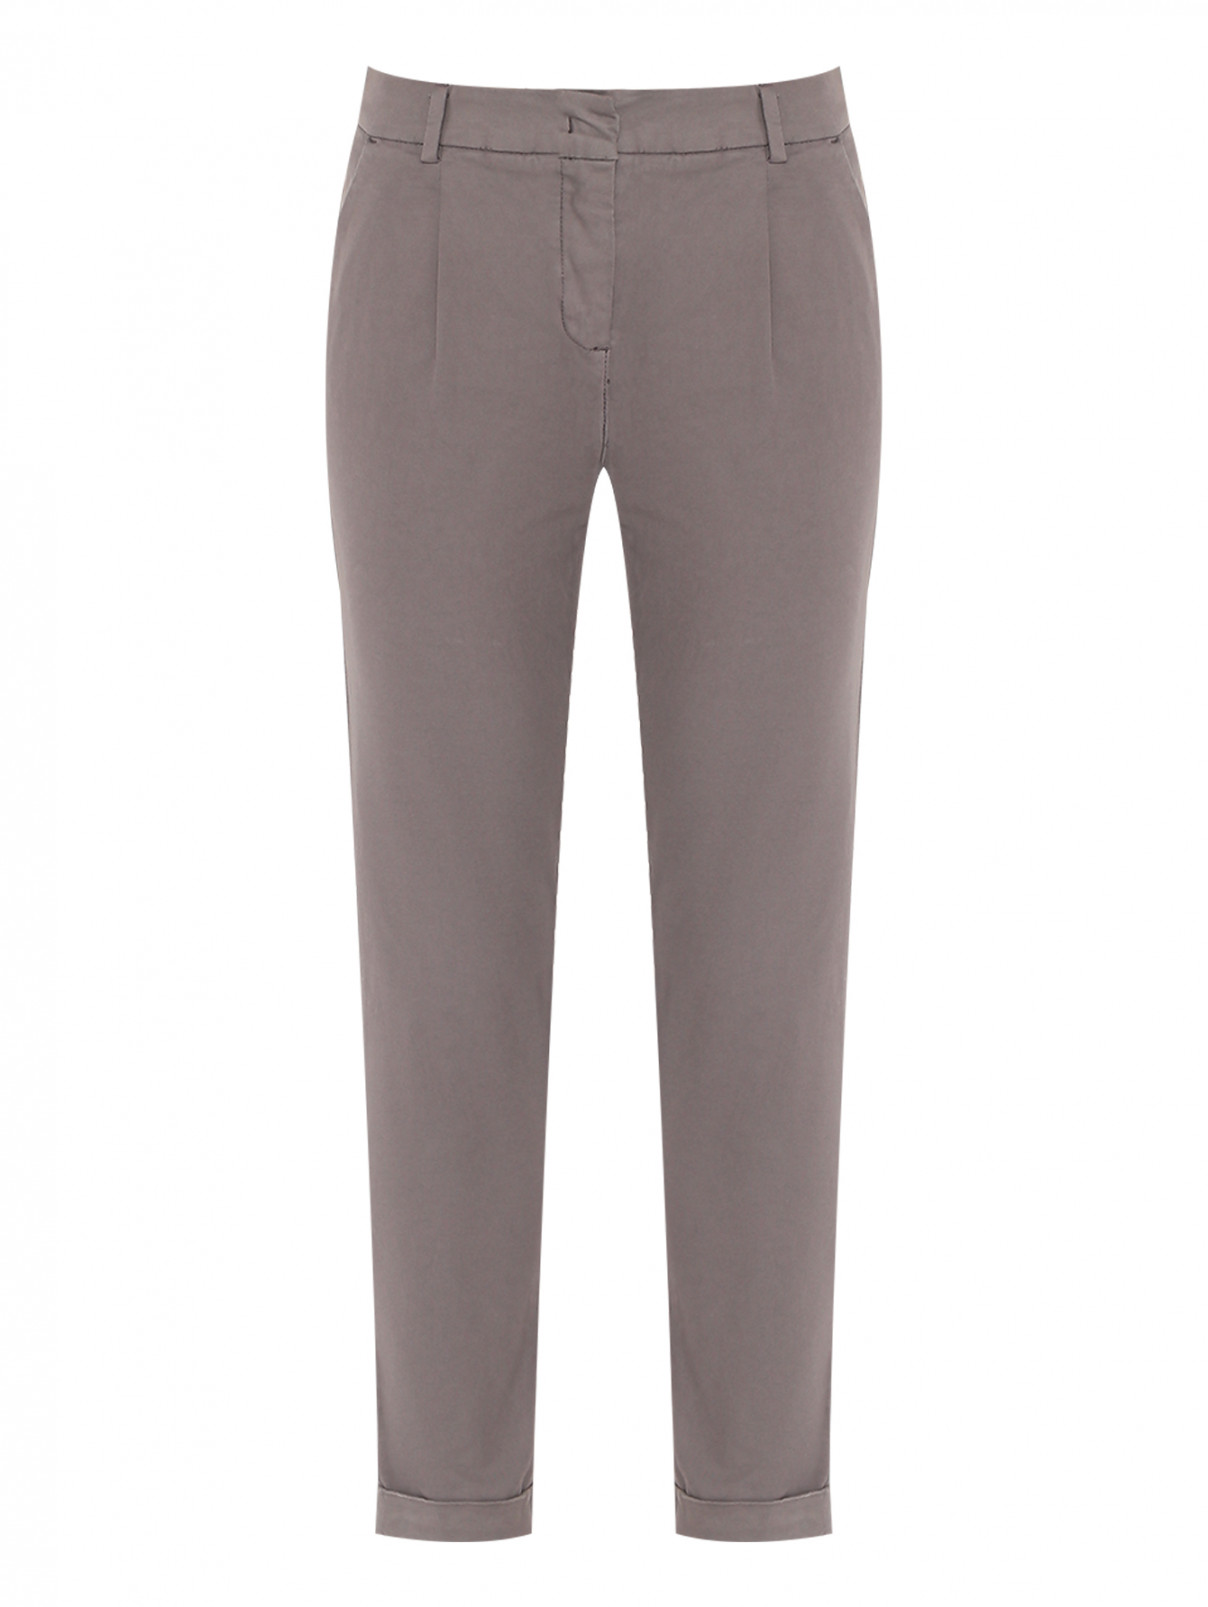 Зауженные брюки из хлопка Bruno Manetti  –  Общий вид  – Цвет:  Серый